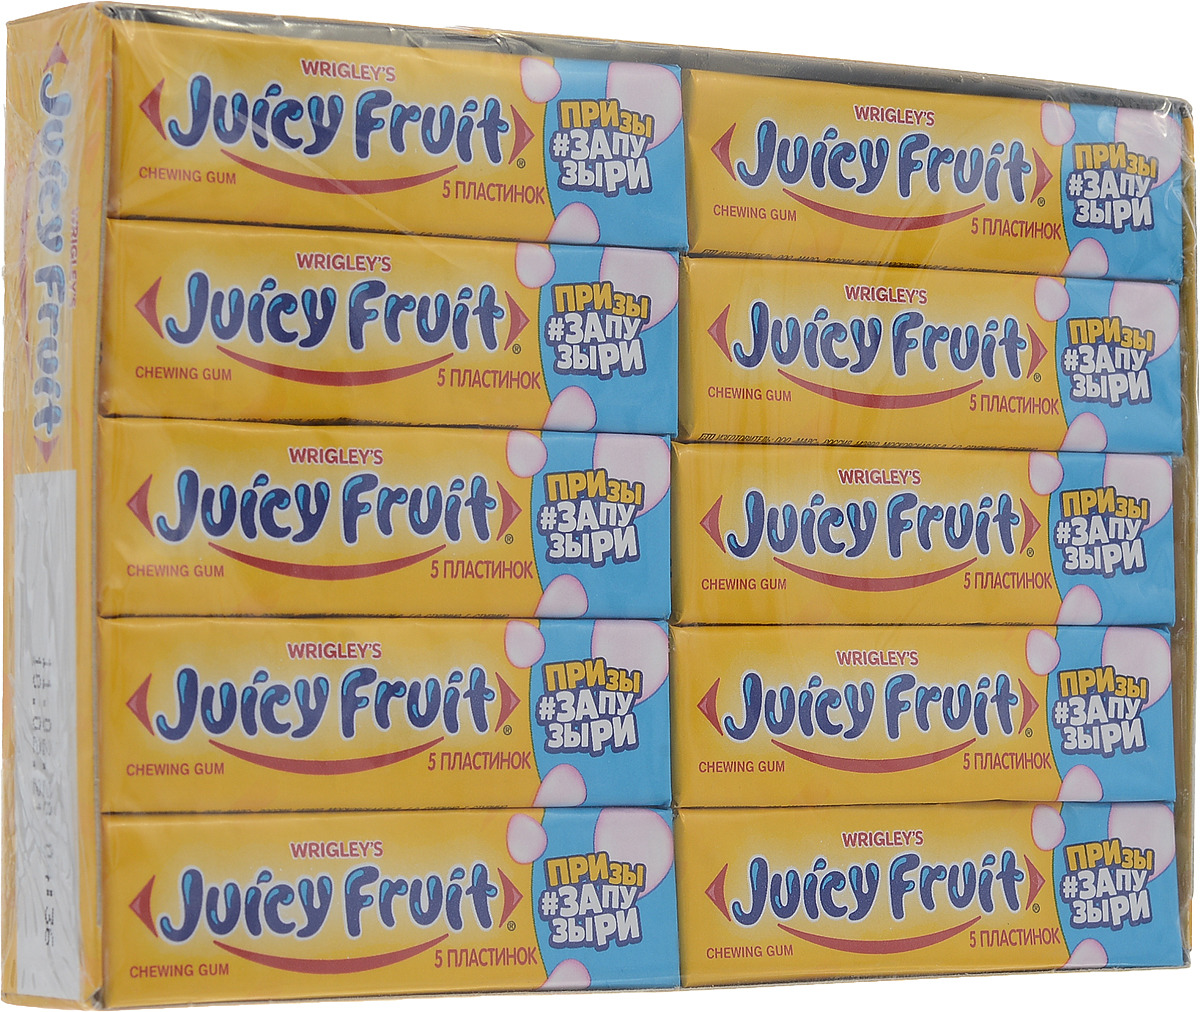 Juicy Fruit is a Freak!